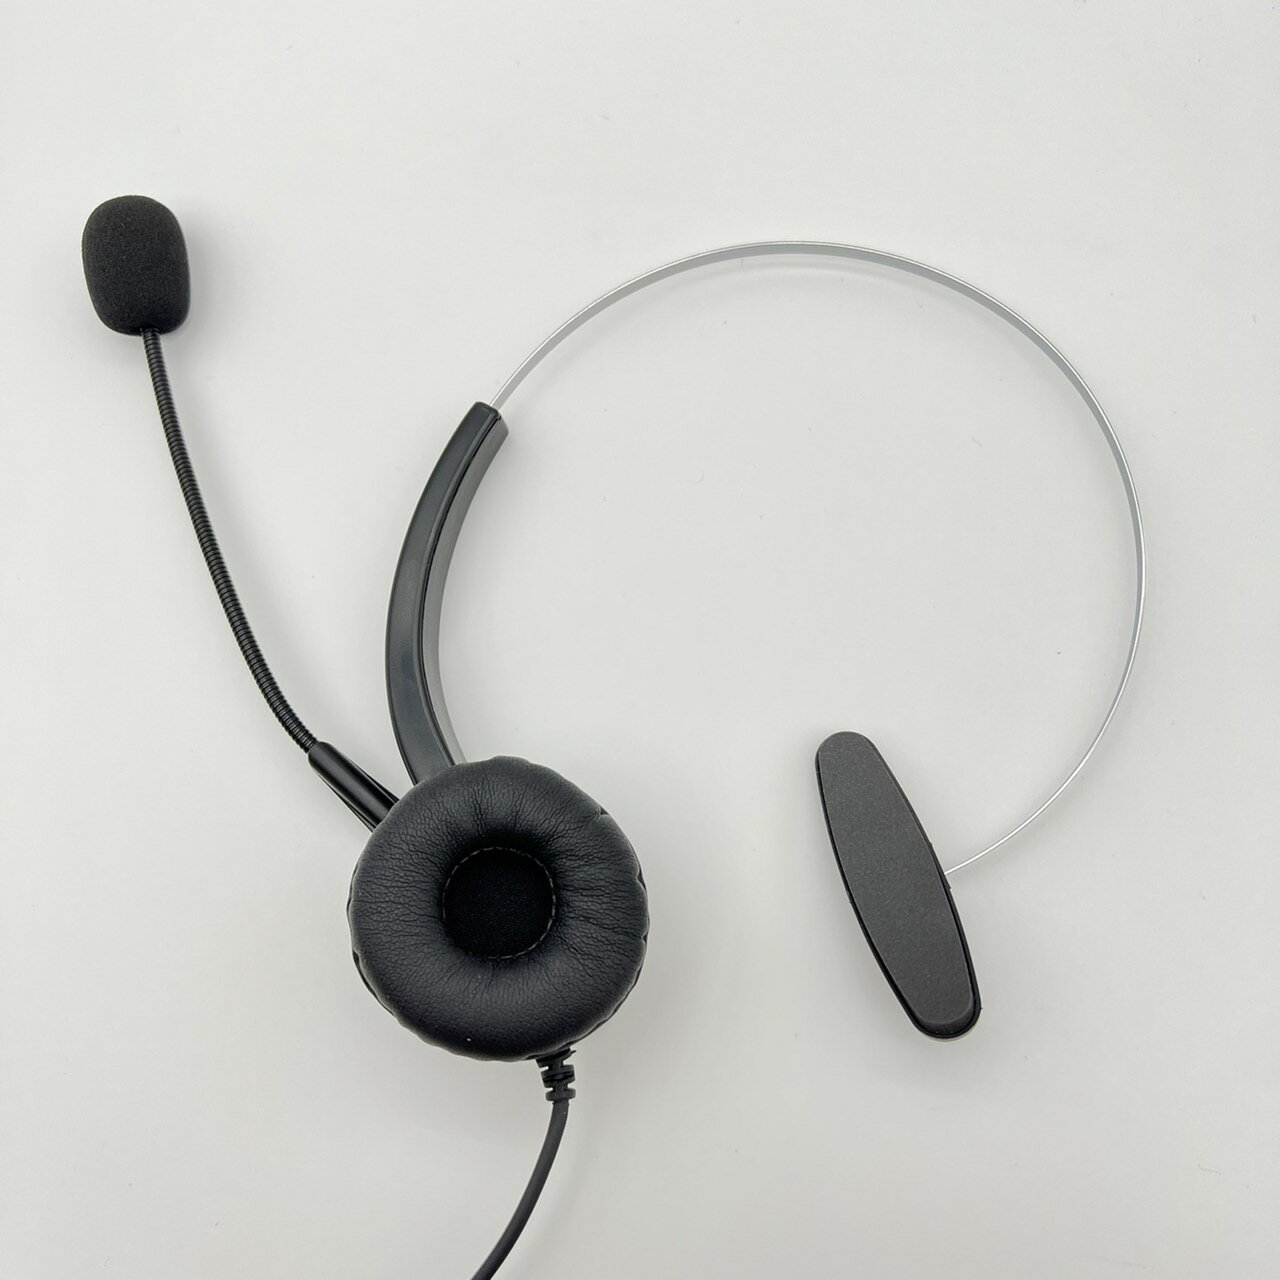 單耳耳機麥克風 阿爾卡特 ALCATEL 8018 頭戴式耳麥 電話商務會議 話務行銷 辦公室耳麥